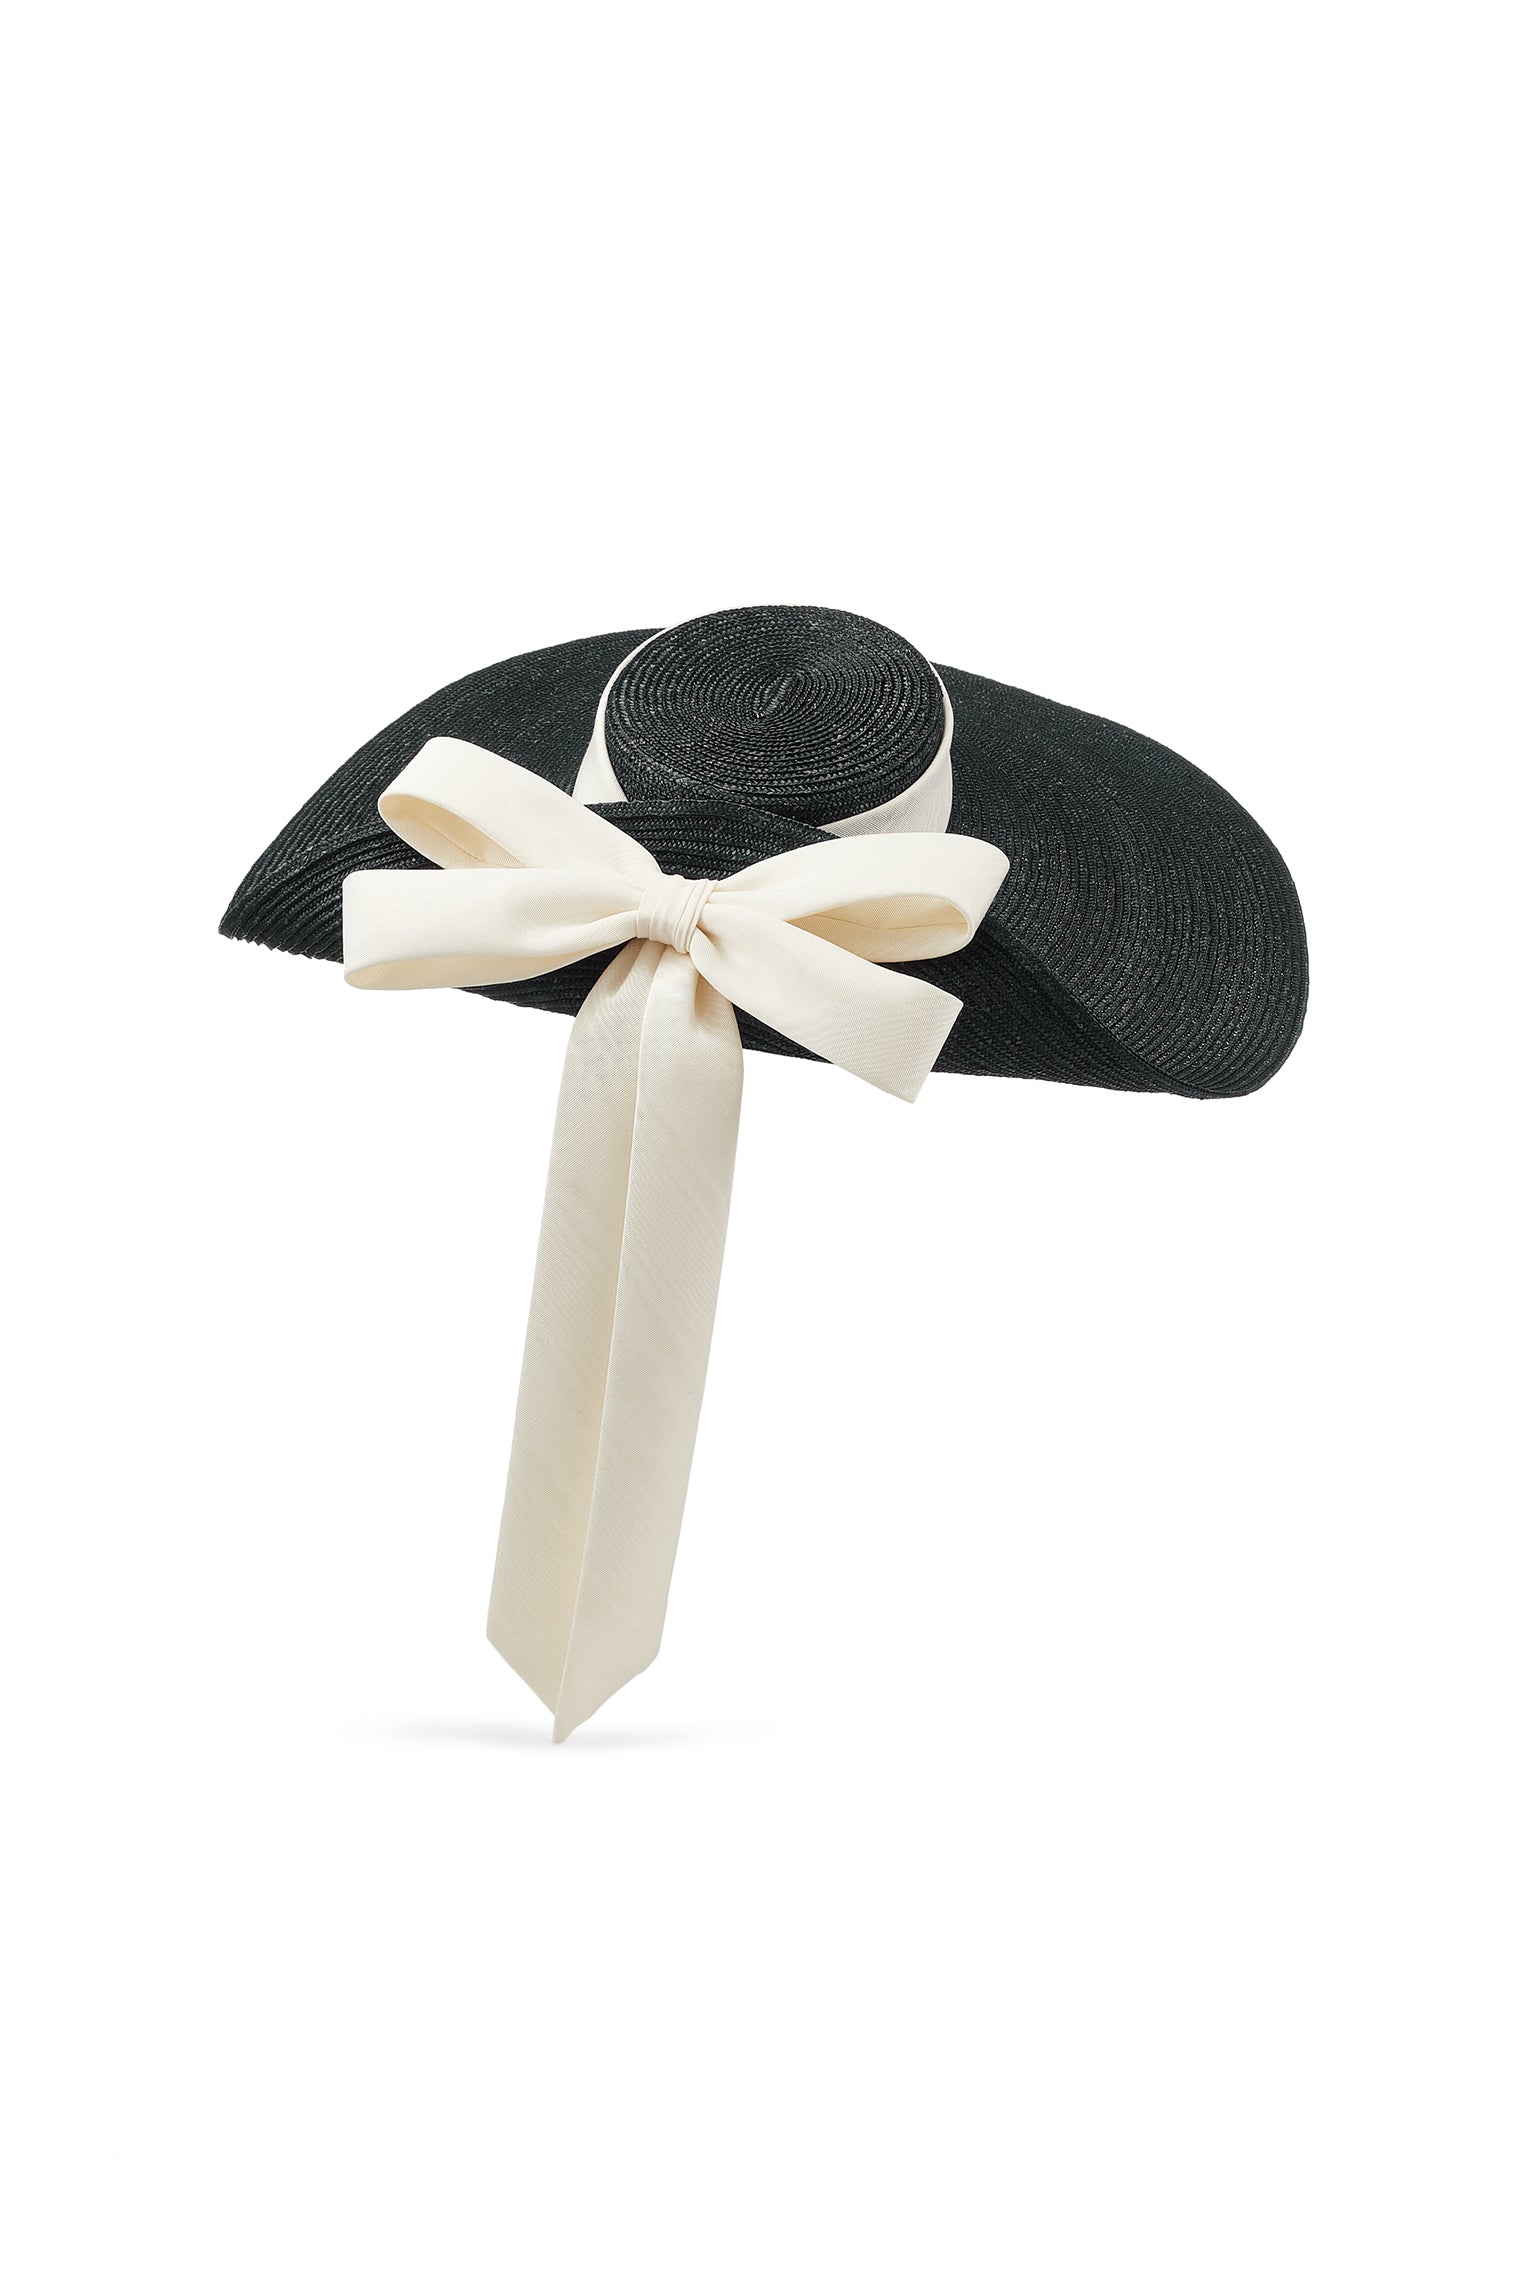 Lady Grey Black Wide Brim Hat - New Season Women's Hats - Lock & Co. Hatters London UK